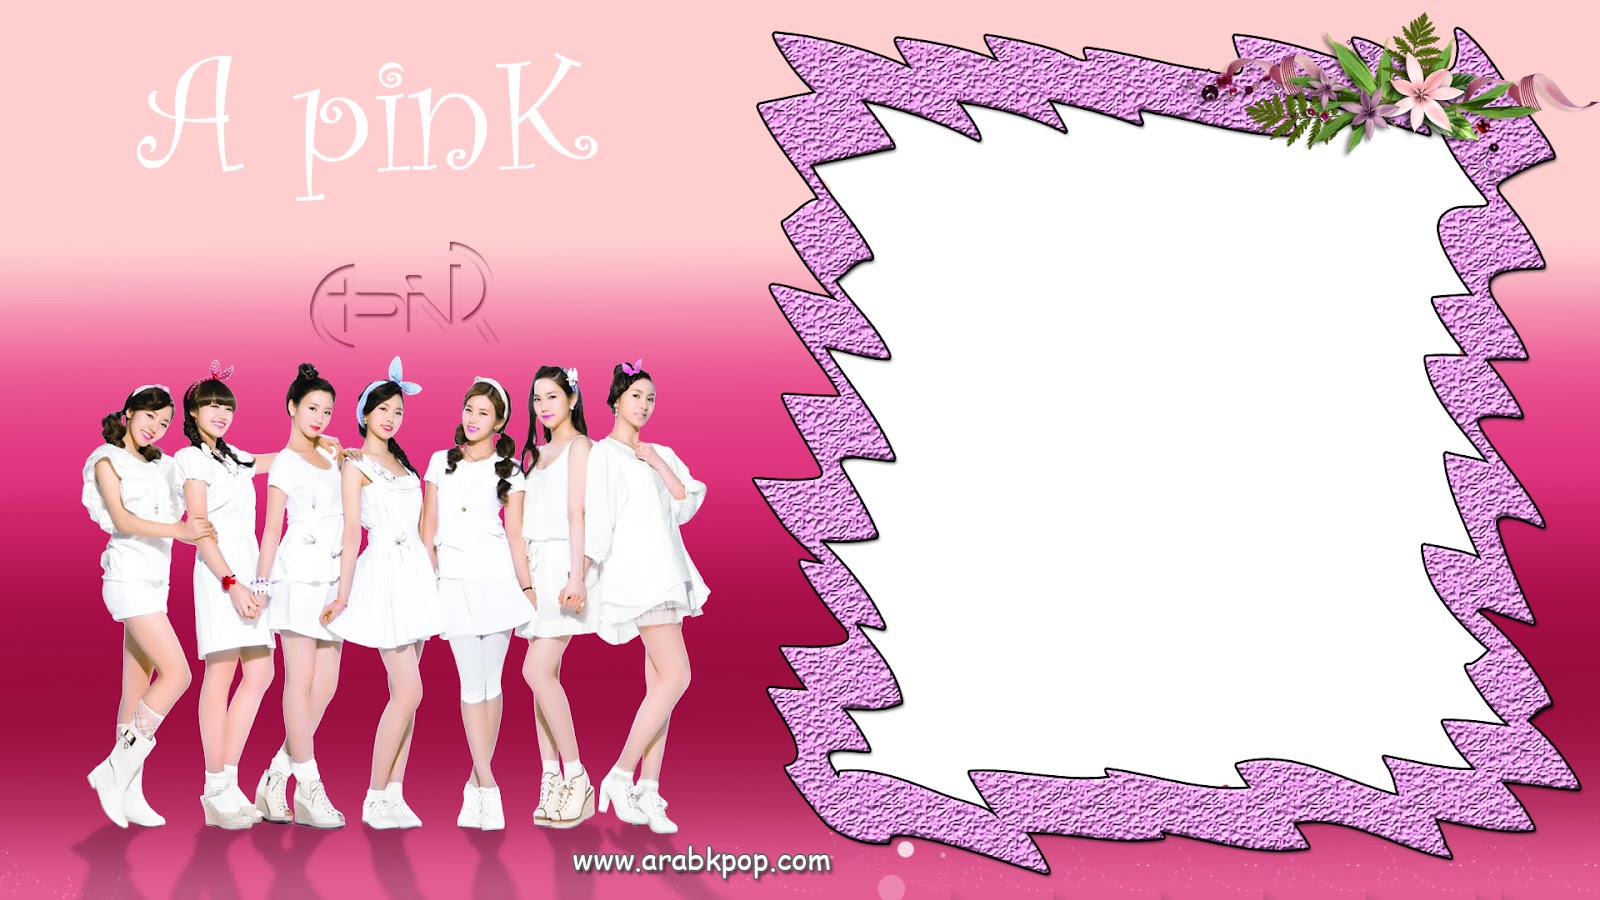 صور لمشاهير كوريا للكتابة عليها البارت الاول A+pinK+arabkpop